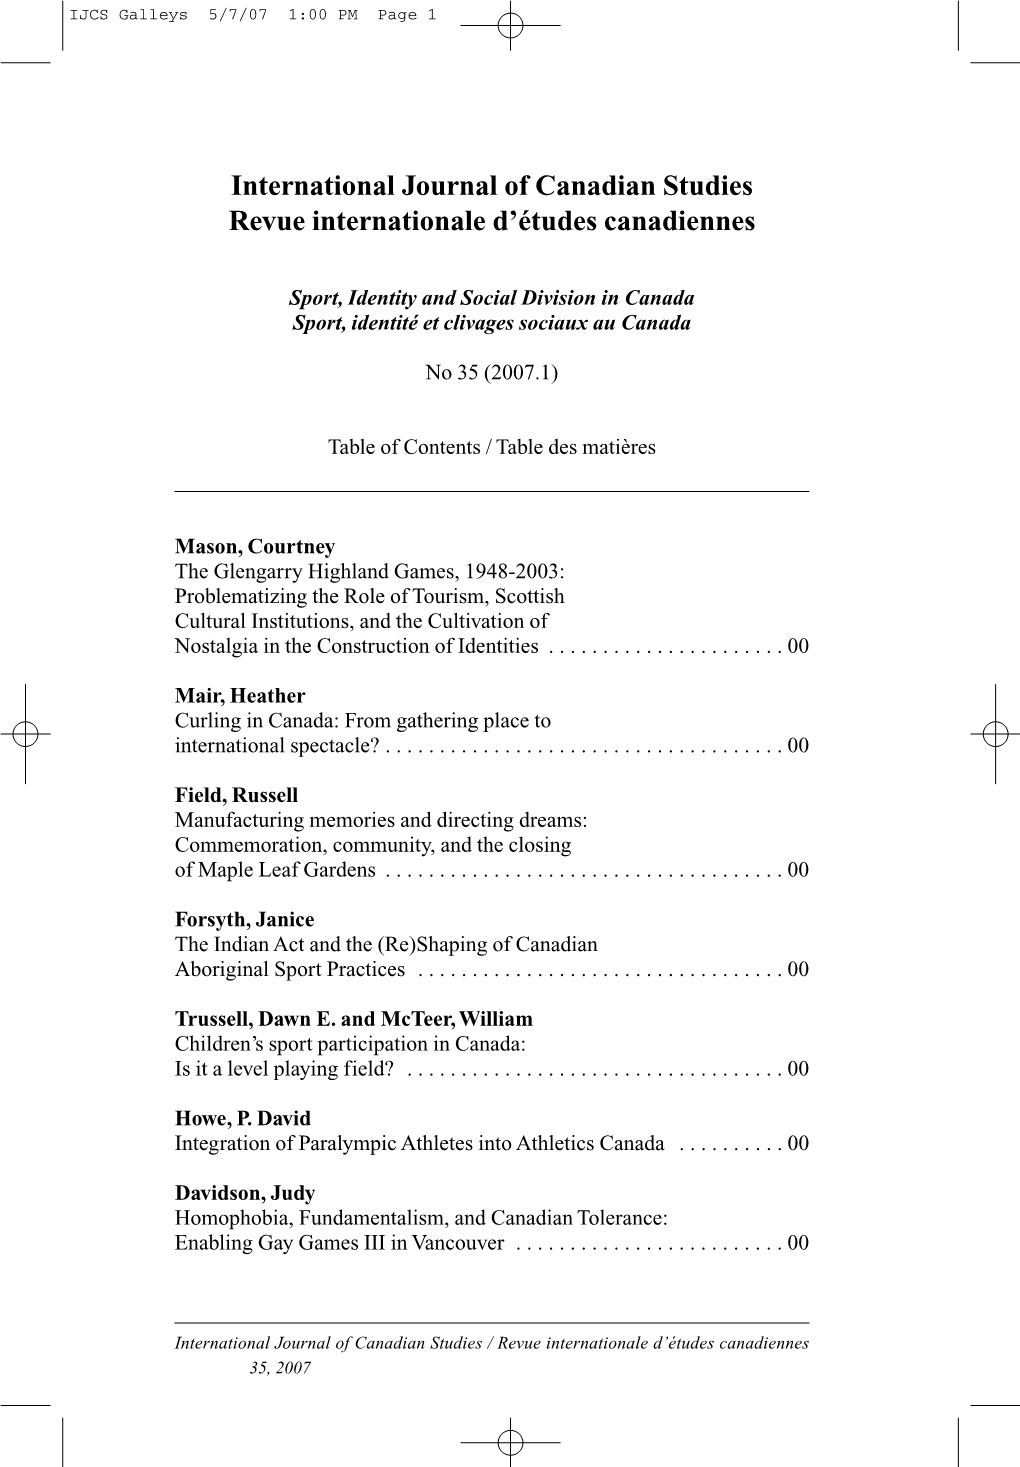 International Journal of Canadian Studies Revue Internationale D’Études Canadiennes